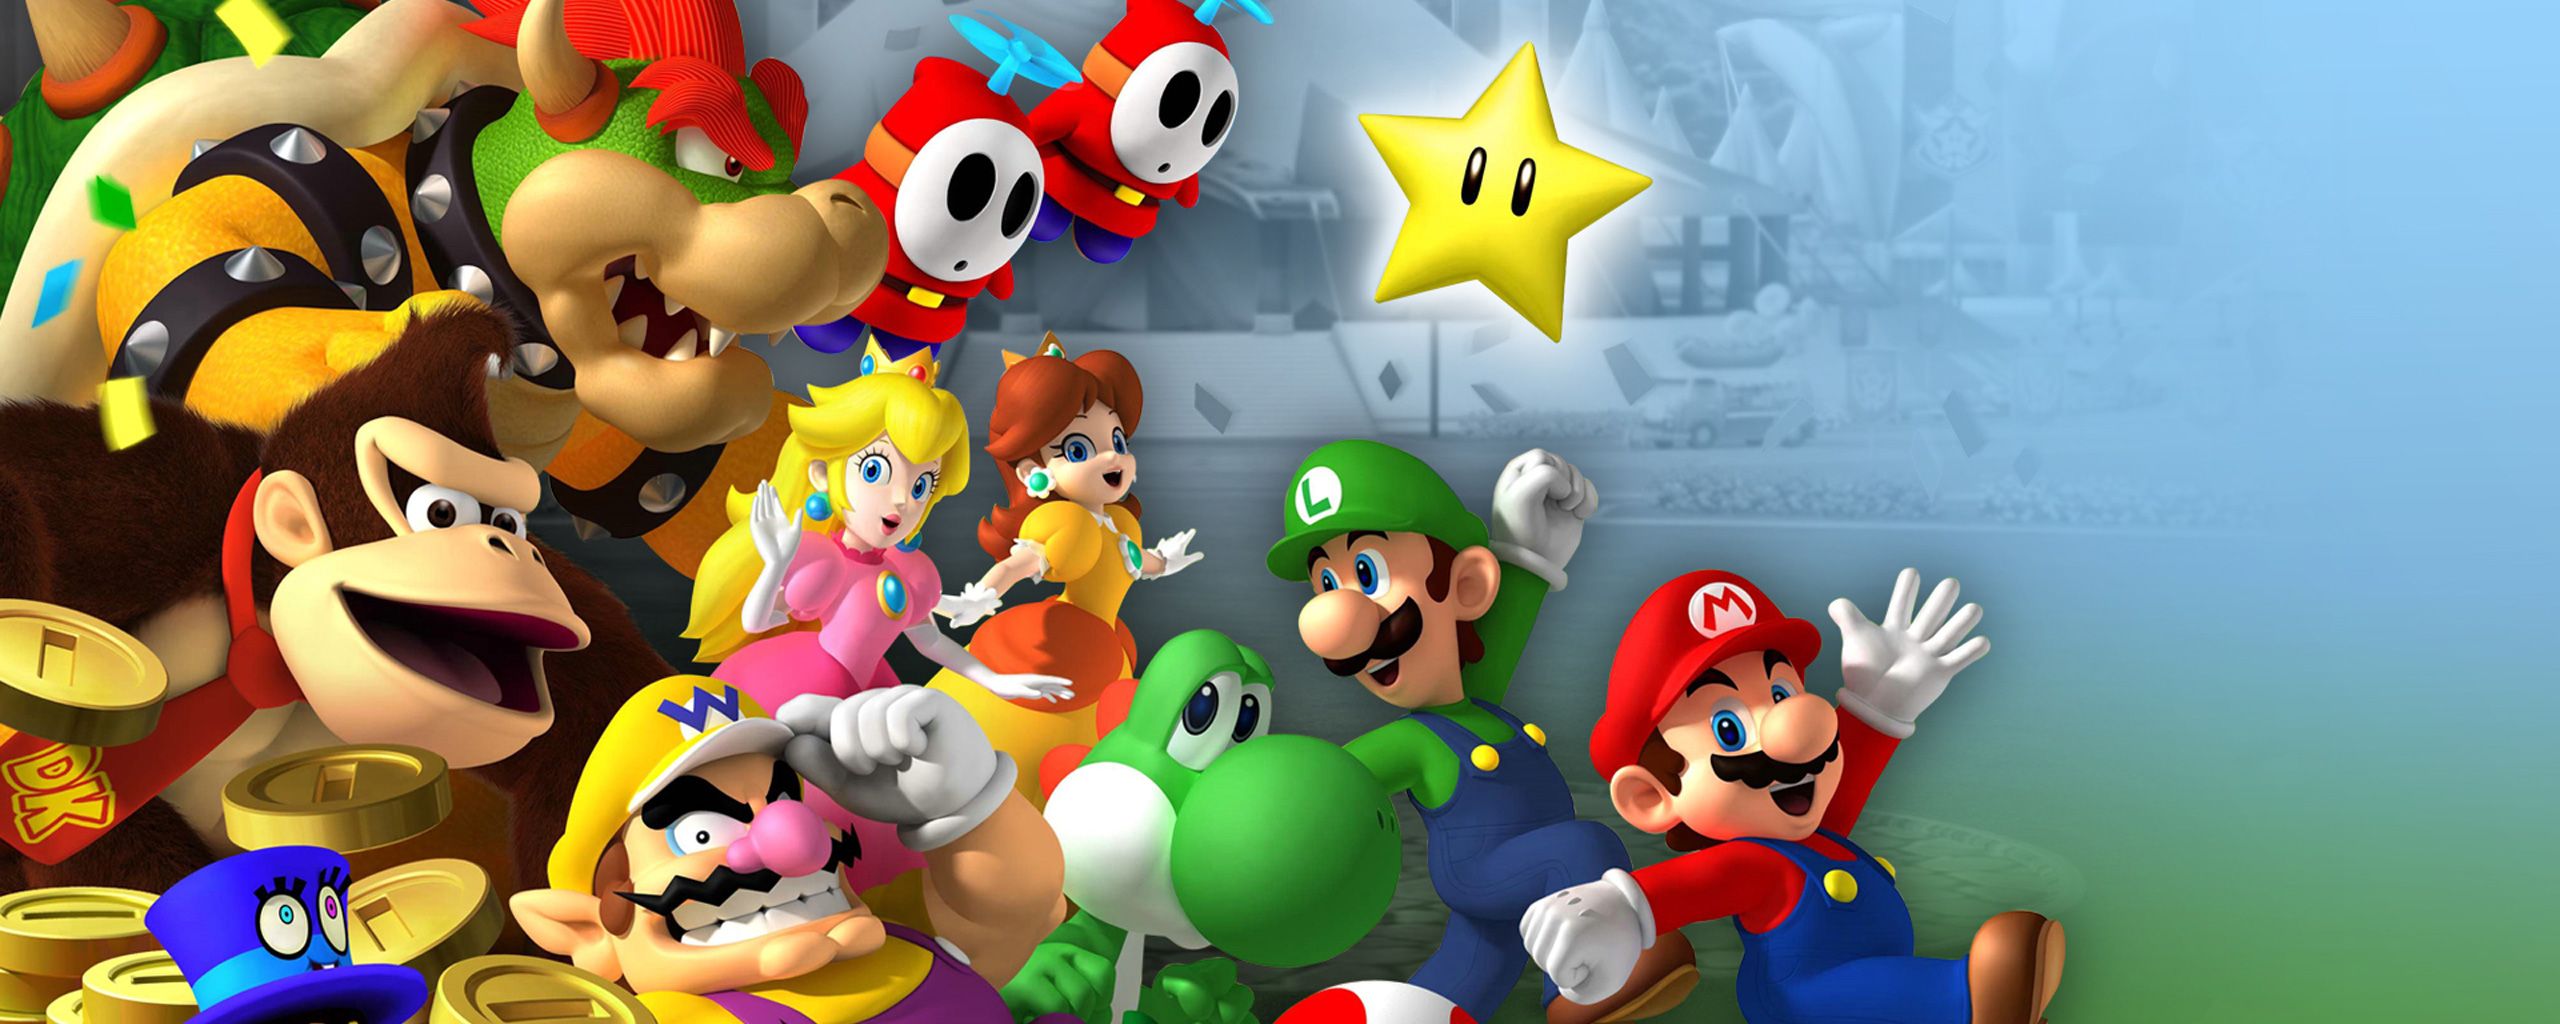 Fondos de Super Mario Bros Descargar # 5AP7I61 - 4USkY